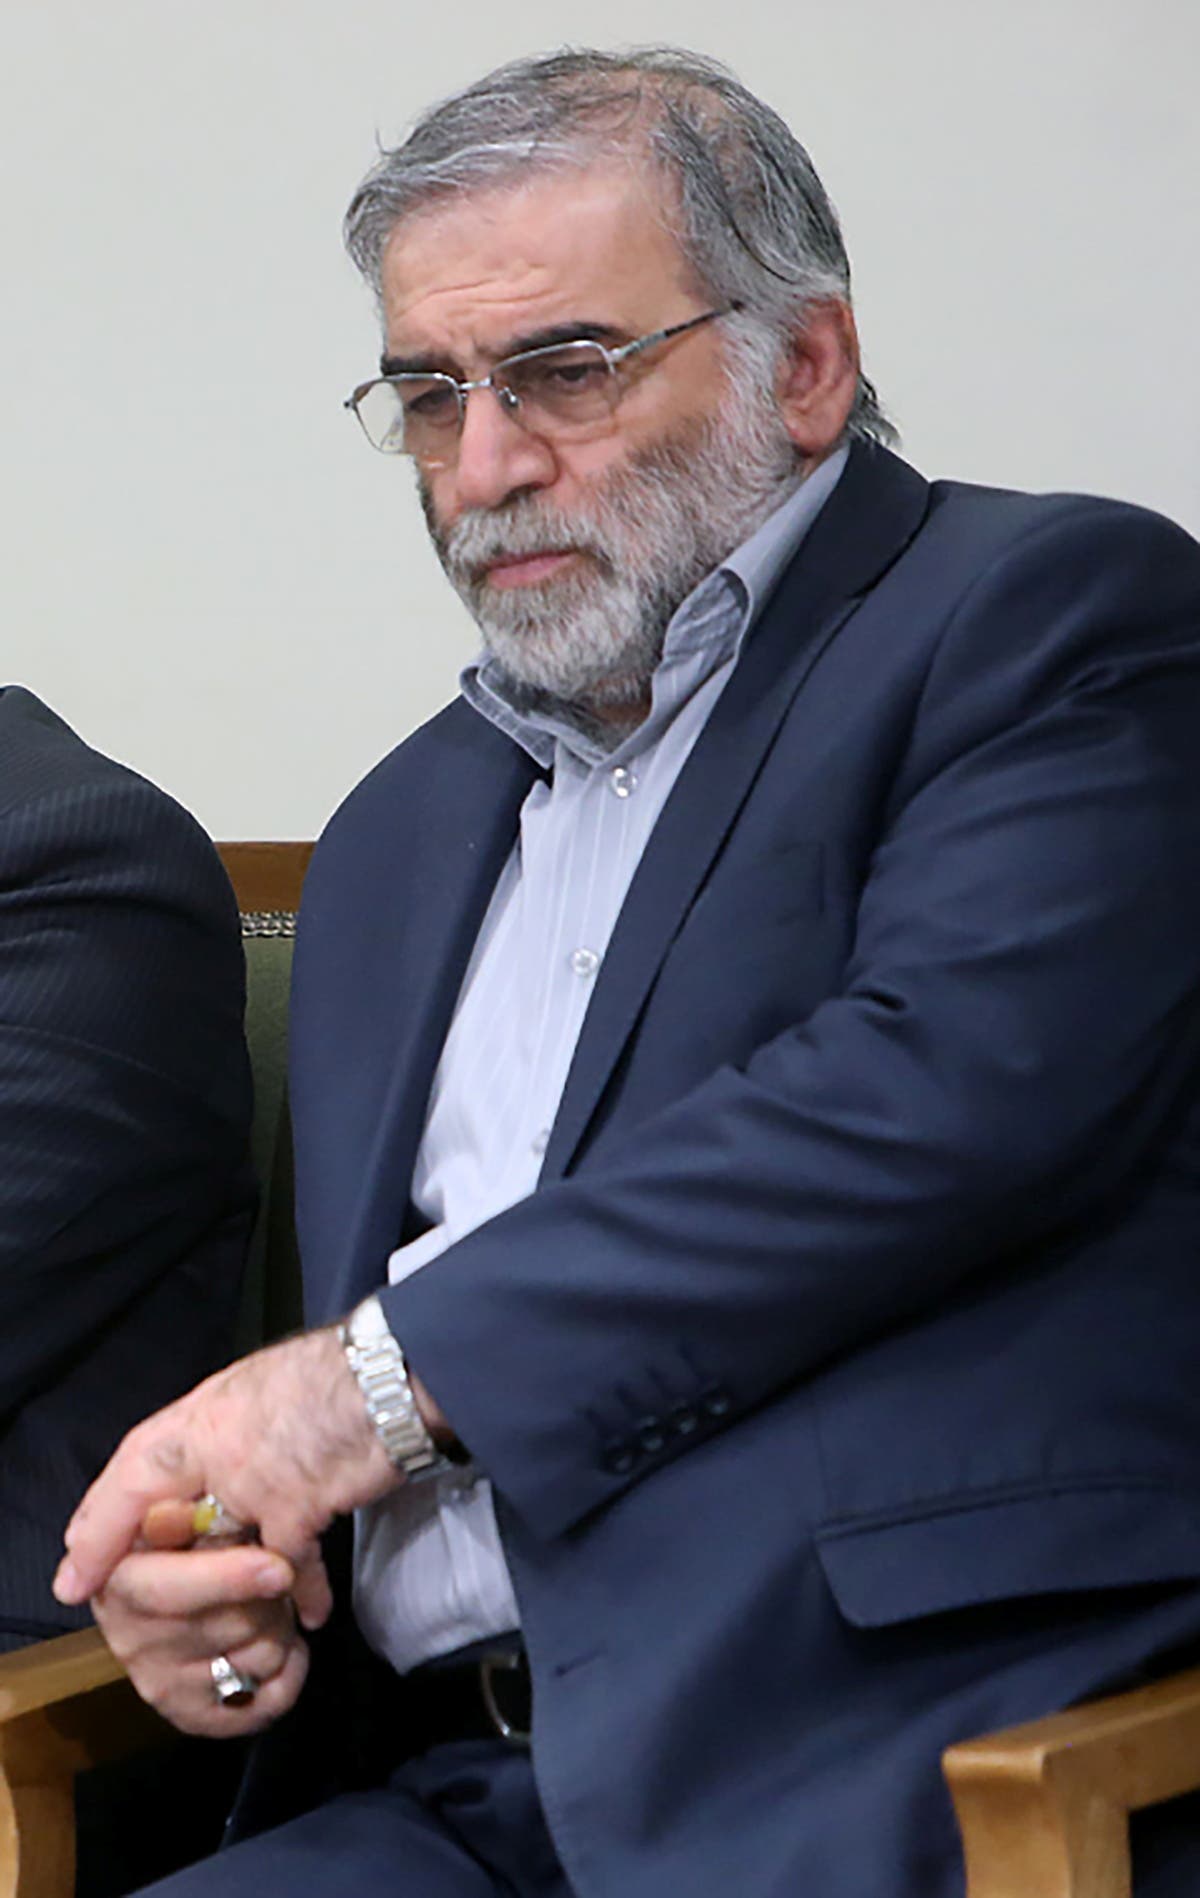 Netanyahu'ya yakın bir bakan: İranlı nükleer bilimci Mohsen Fakhrizadeh'in Tahran'da öldürülmesinin arkasında kimin olduğuna dair bir kanıt yok.İsrail Başbakanı Benjamin Netanyahu'ya yakın olan İsrail Bakanı Tzachi Hanegbi, "Bunu kimin yaptığına dair hiçbir kanıtım yok. Sorumlu olduğum için konuşamayacağımdan değil, gerçekten hiçbir kanıtım yok" dedi.İran Cumhurbaşkanı Hassan Ruhani, İsrail'i Batı'nın "Tahran'ın gizli nükleer programının arkasındaki beyni" olarak tanımladığı şeyi öldürmekle suçladı. Devlet televizyonunda yayınlanan bir hükümet toplantısında, "Halk ve ülke yetkilileri, Siyonist komploların tuzağına düşmekten daha akıllı ve daha akıllılar ... Bu suça uygun zamanda cevap verecekler." Dedi.